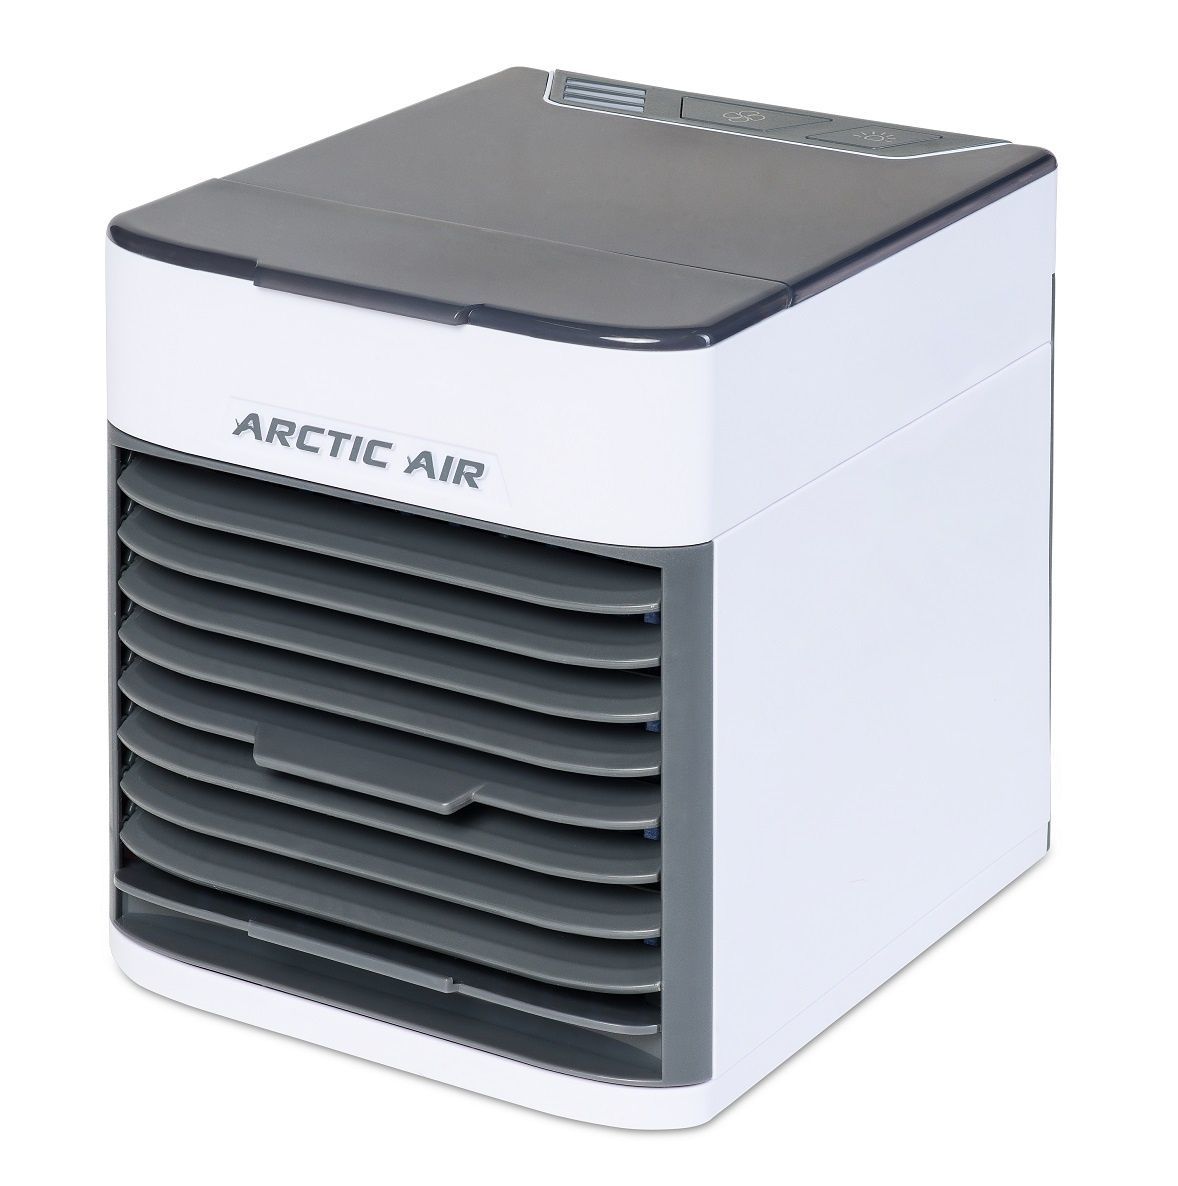 Напольный охладитель воздуха: Напольный мобильный кондиционер без воздуховода